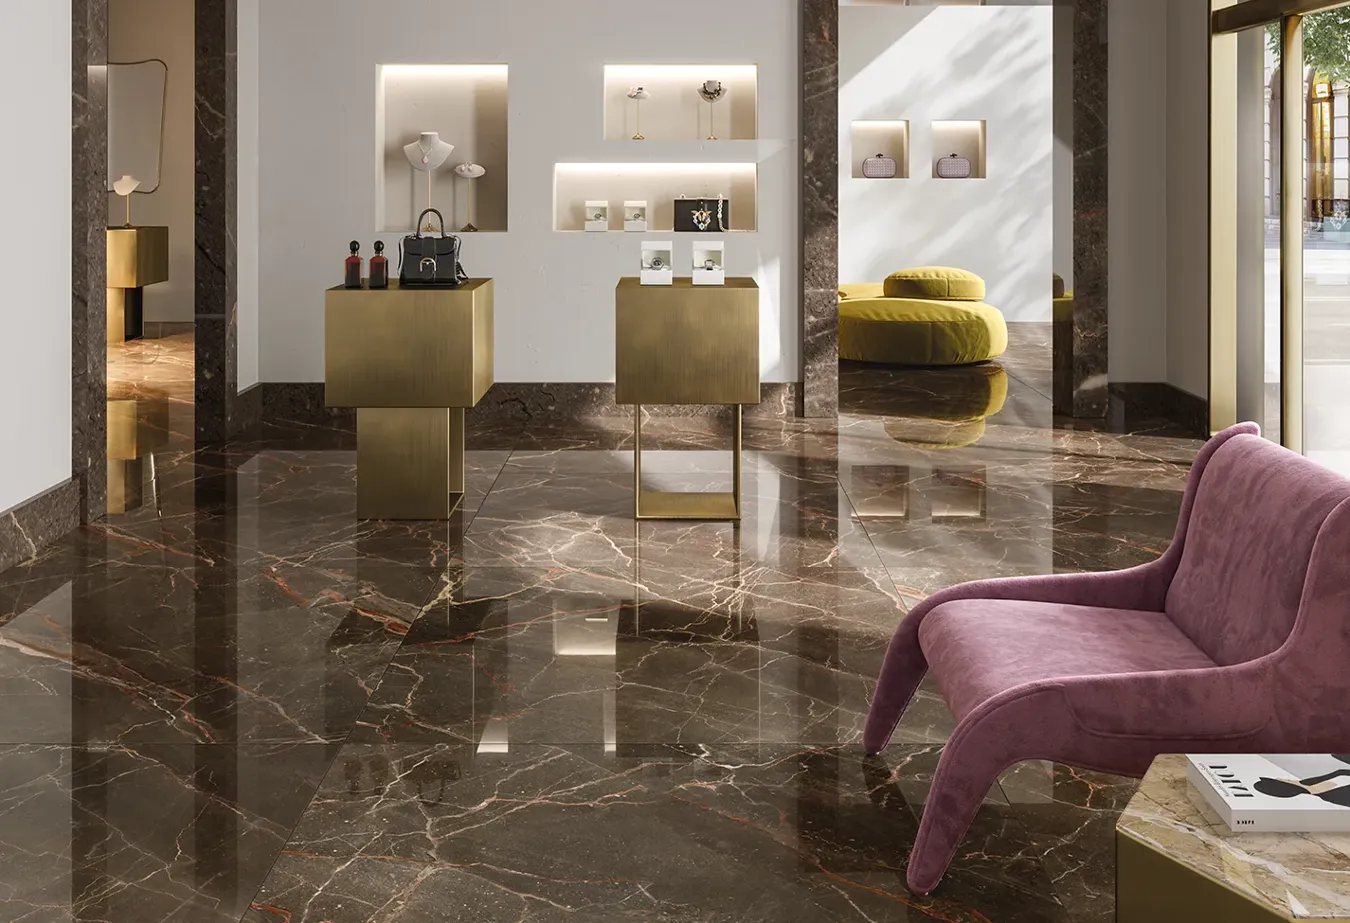 Изысканный пол из керамогранита под мрамор Ombra Moca коллекции 9cento, дополненный бронзовой мебелью и розовыми бархатными акцентами.